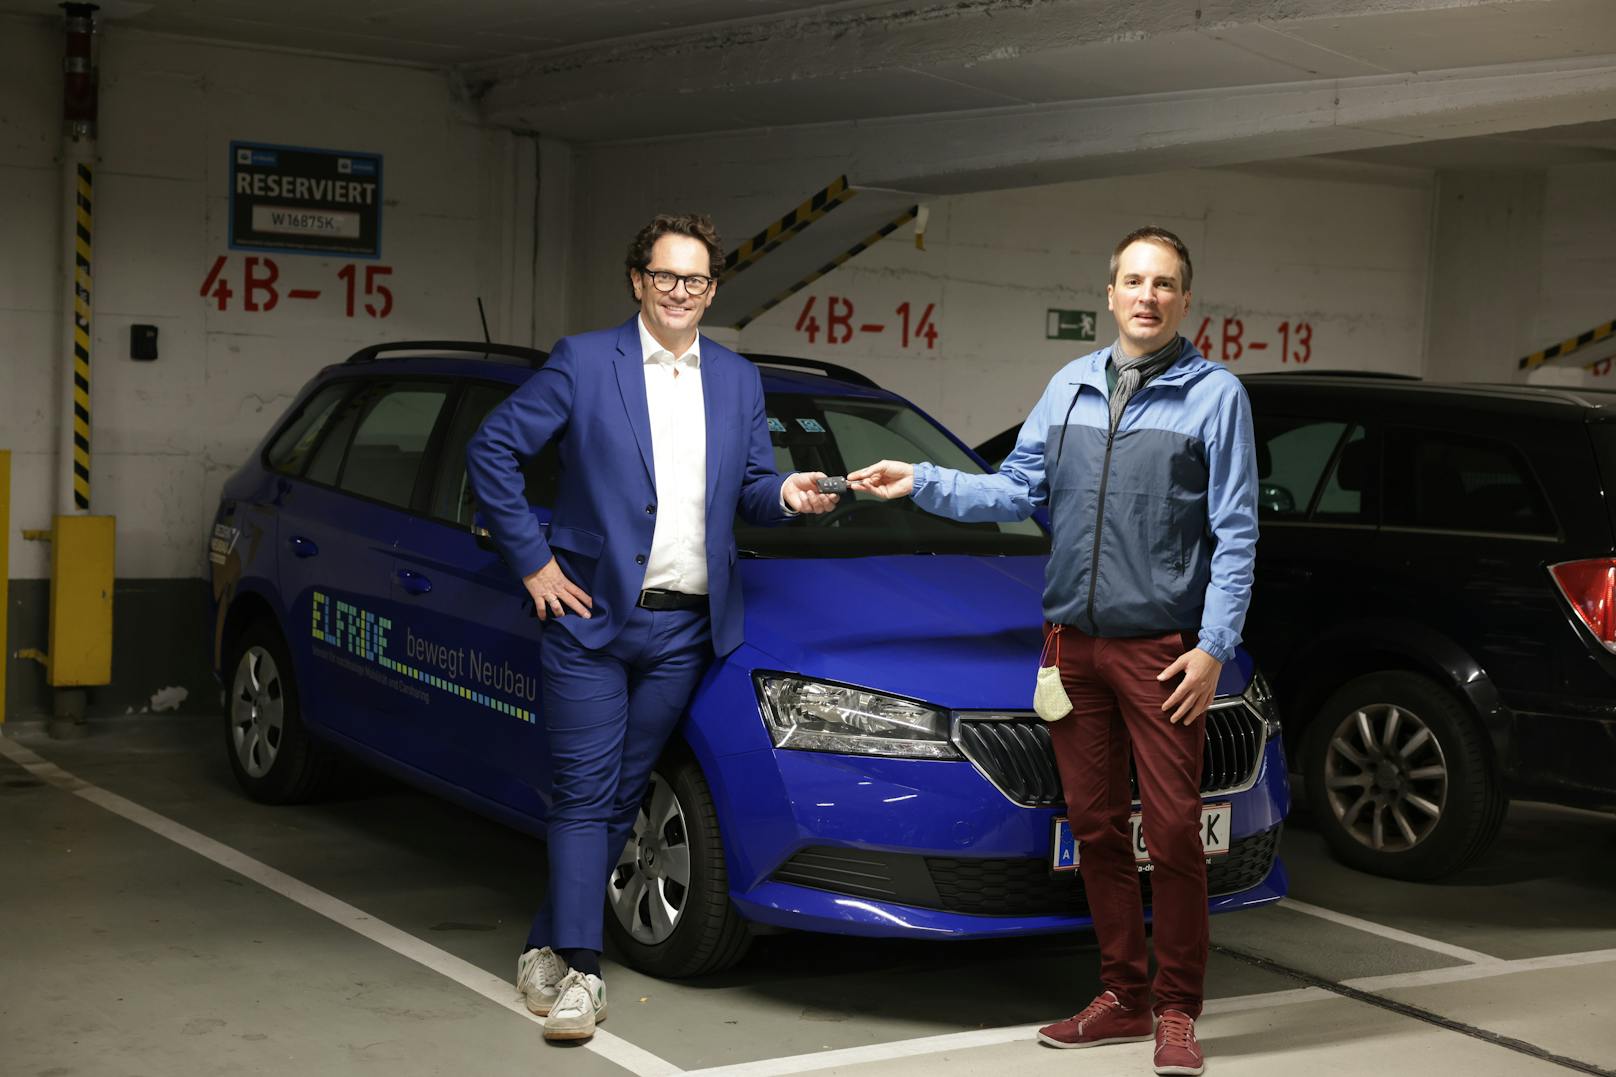 Vor sieben Jahren wurde der gemeinnützige Car-Sharing-Verein "Elfride" von Stefan Waschmann (40,r.) gegründet, nun startet er in der WiPark-Garage im Neubau neu durch. Mit Unterstützung von Bezirkschef Markus Reiter (Grüne, l.).